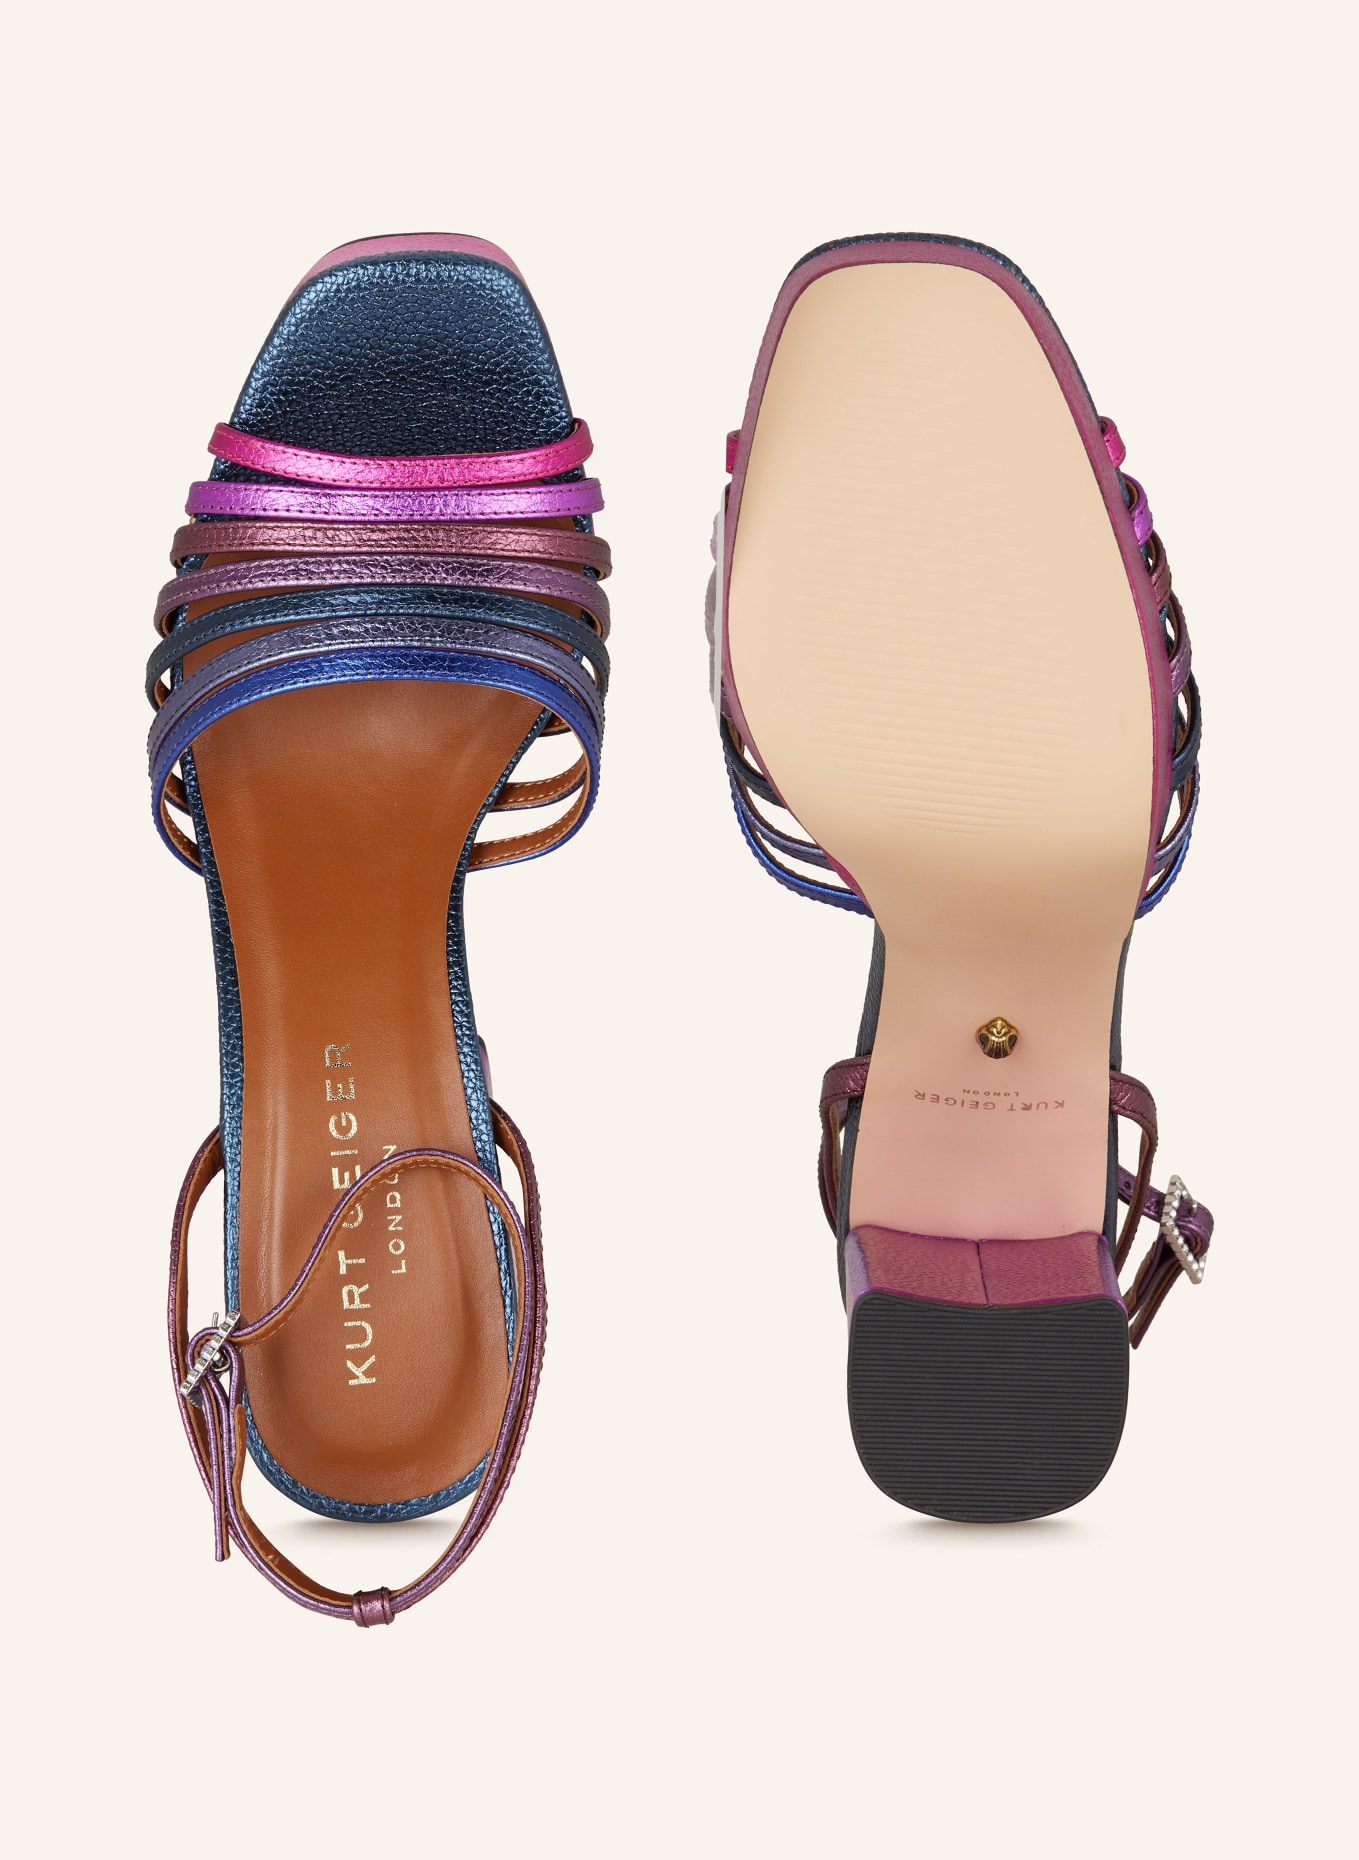 KURT GEIGER Sandals PIERRA, Color: PURPLE/ BLUE (Image 5)